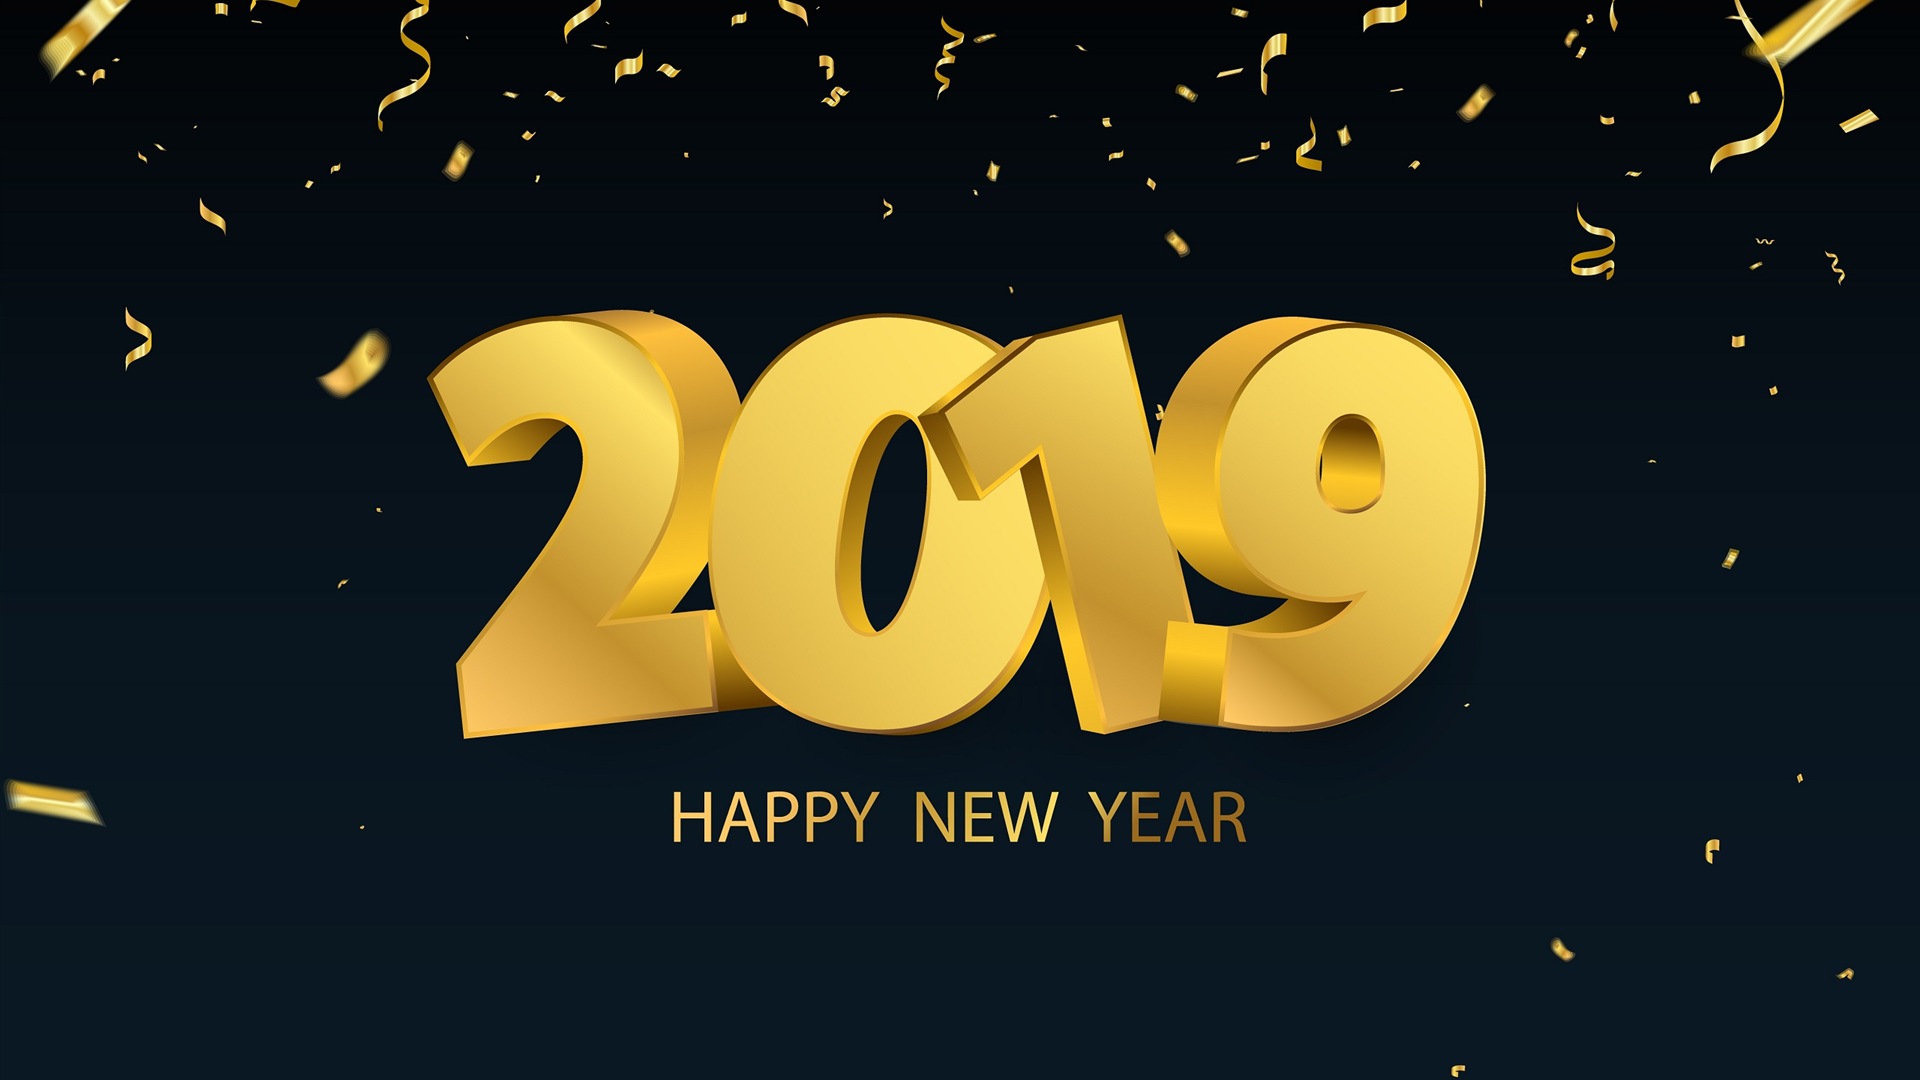 Feliz año nuevo 2019 HD wallpapers #13 - 1920x1080